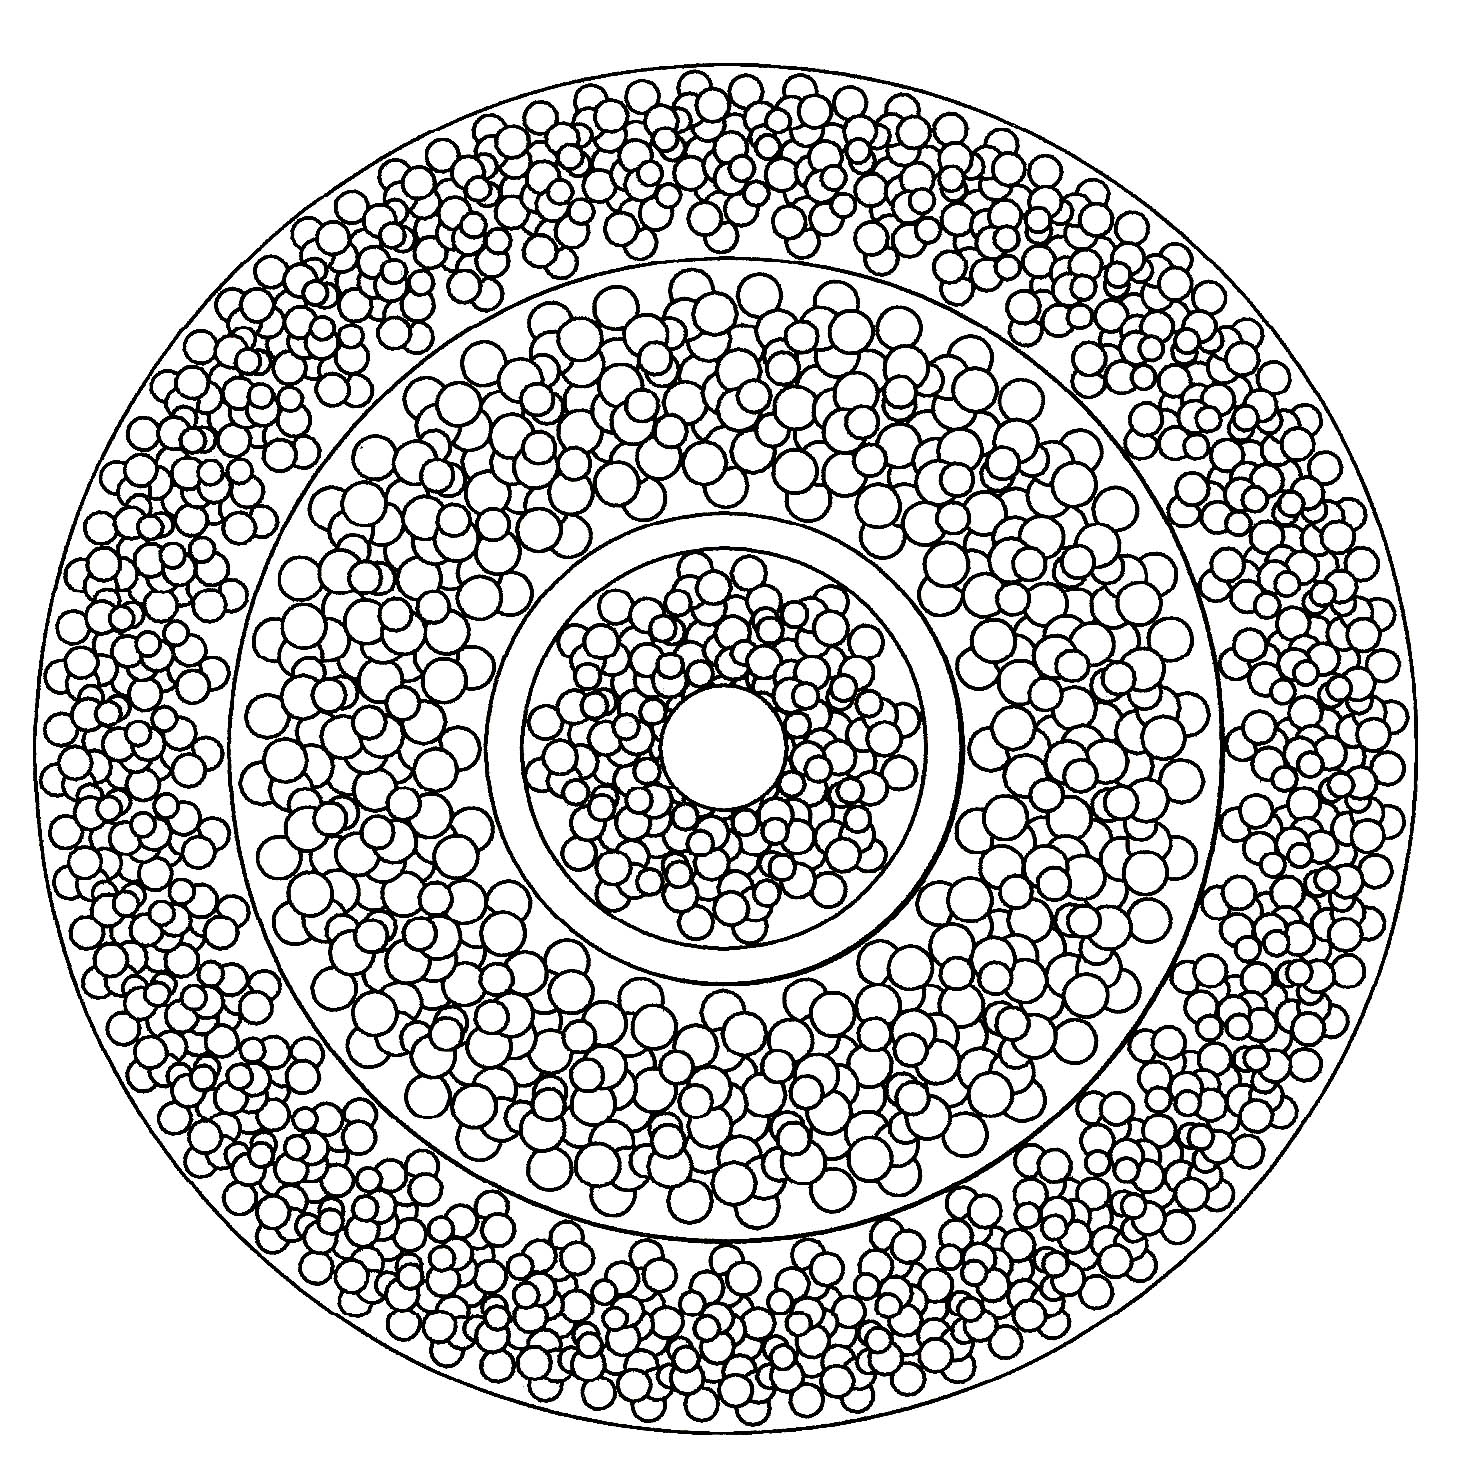 Ein Mandala voller kleiner Kreise